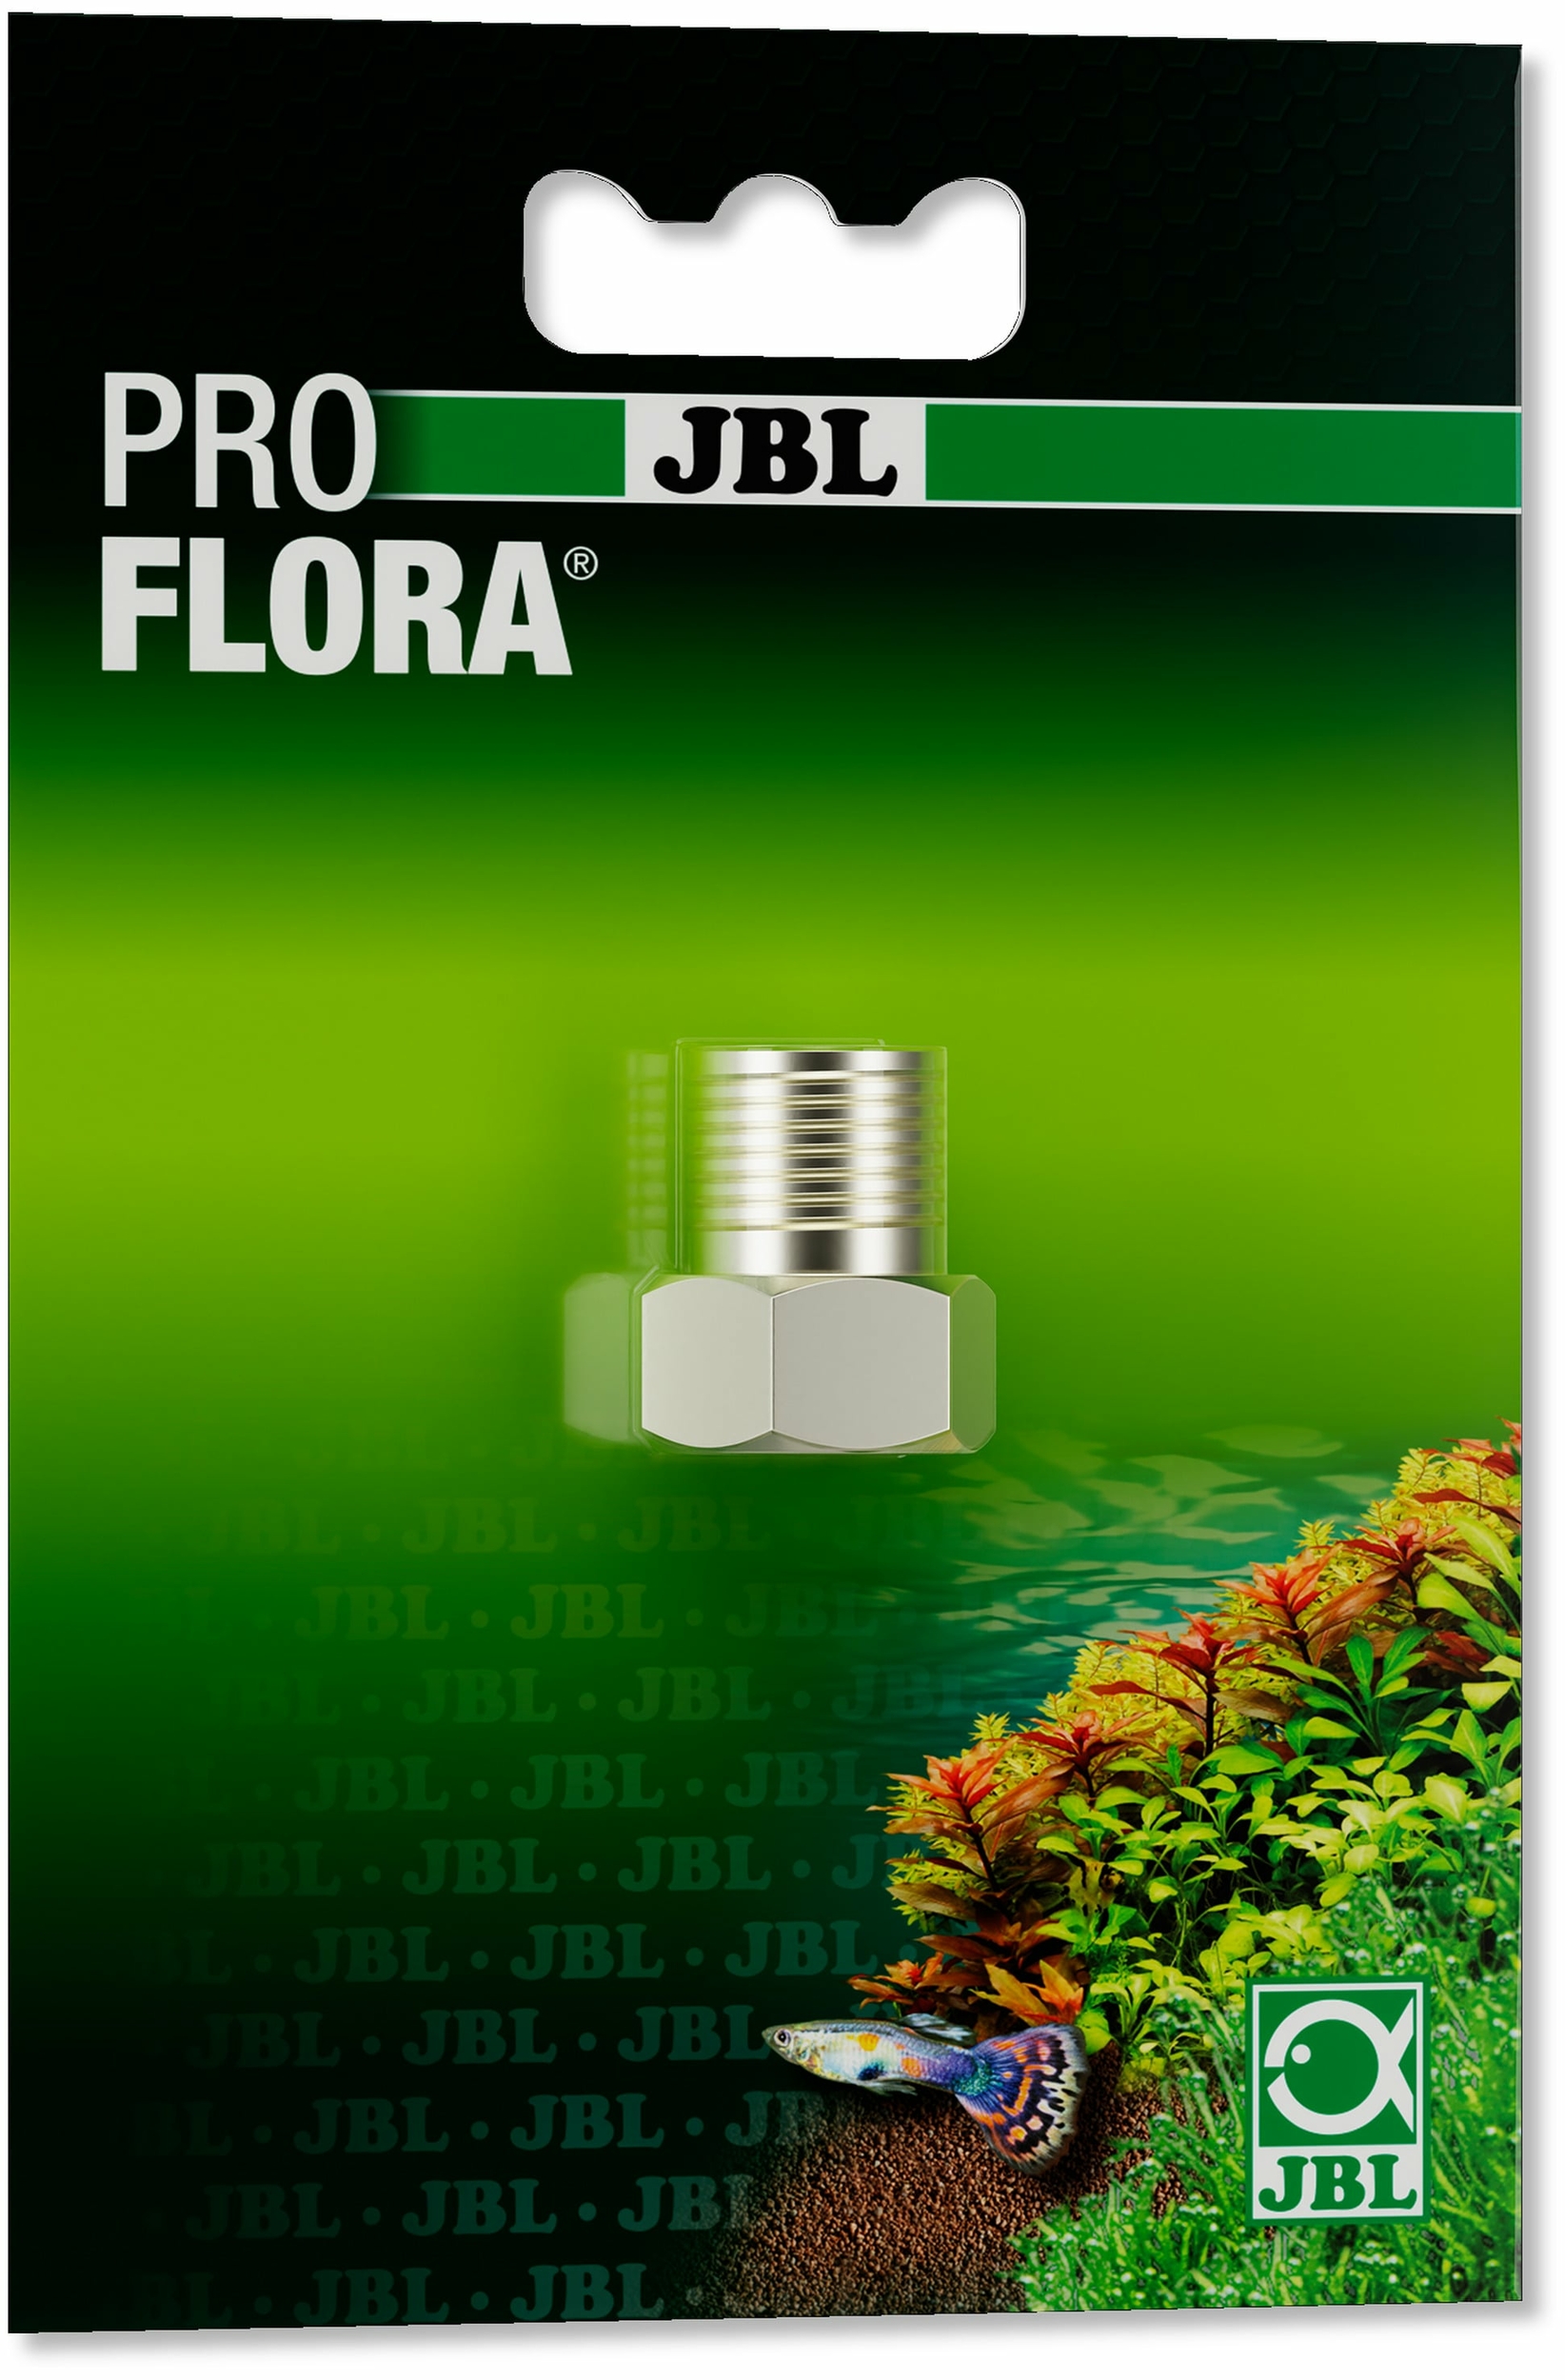 JBL Proflora CO2 Adapt U - u201 permet d\'utiliser une bouteille jetable 500 gr. sur un kit CO2 JBL Proflora CO2 u201